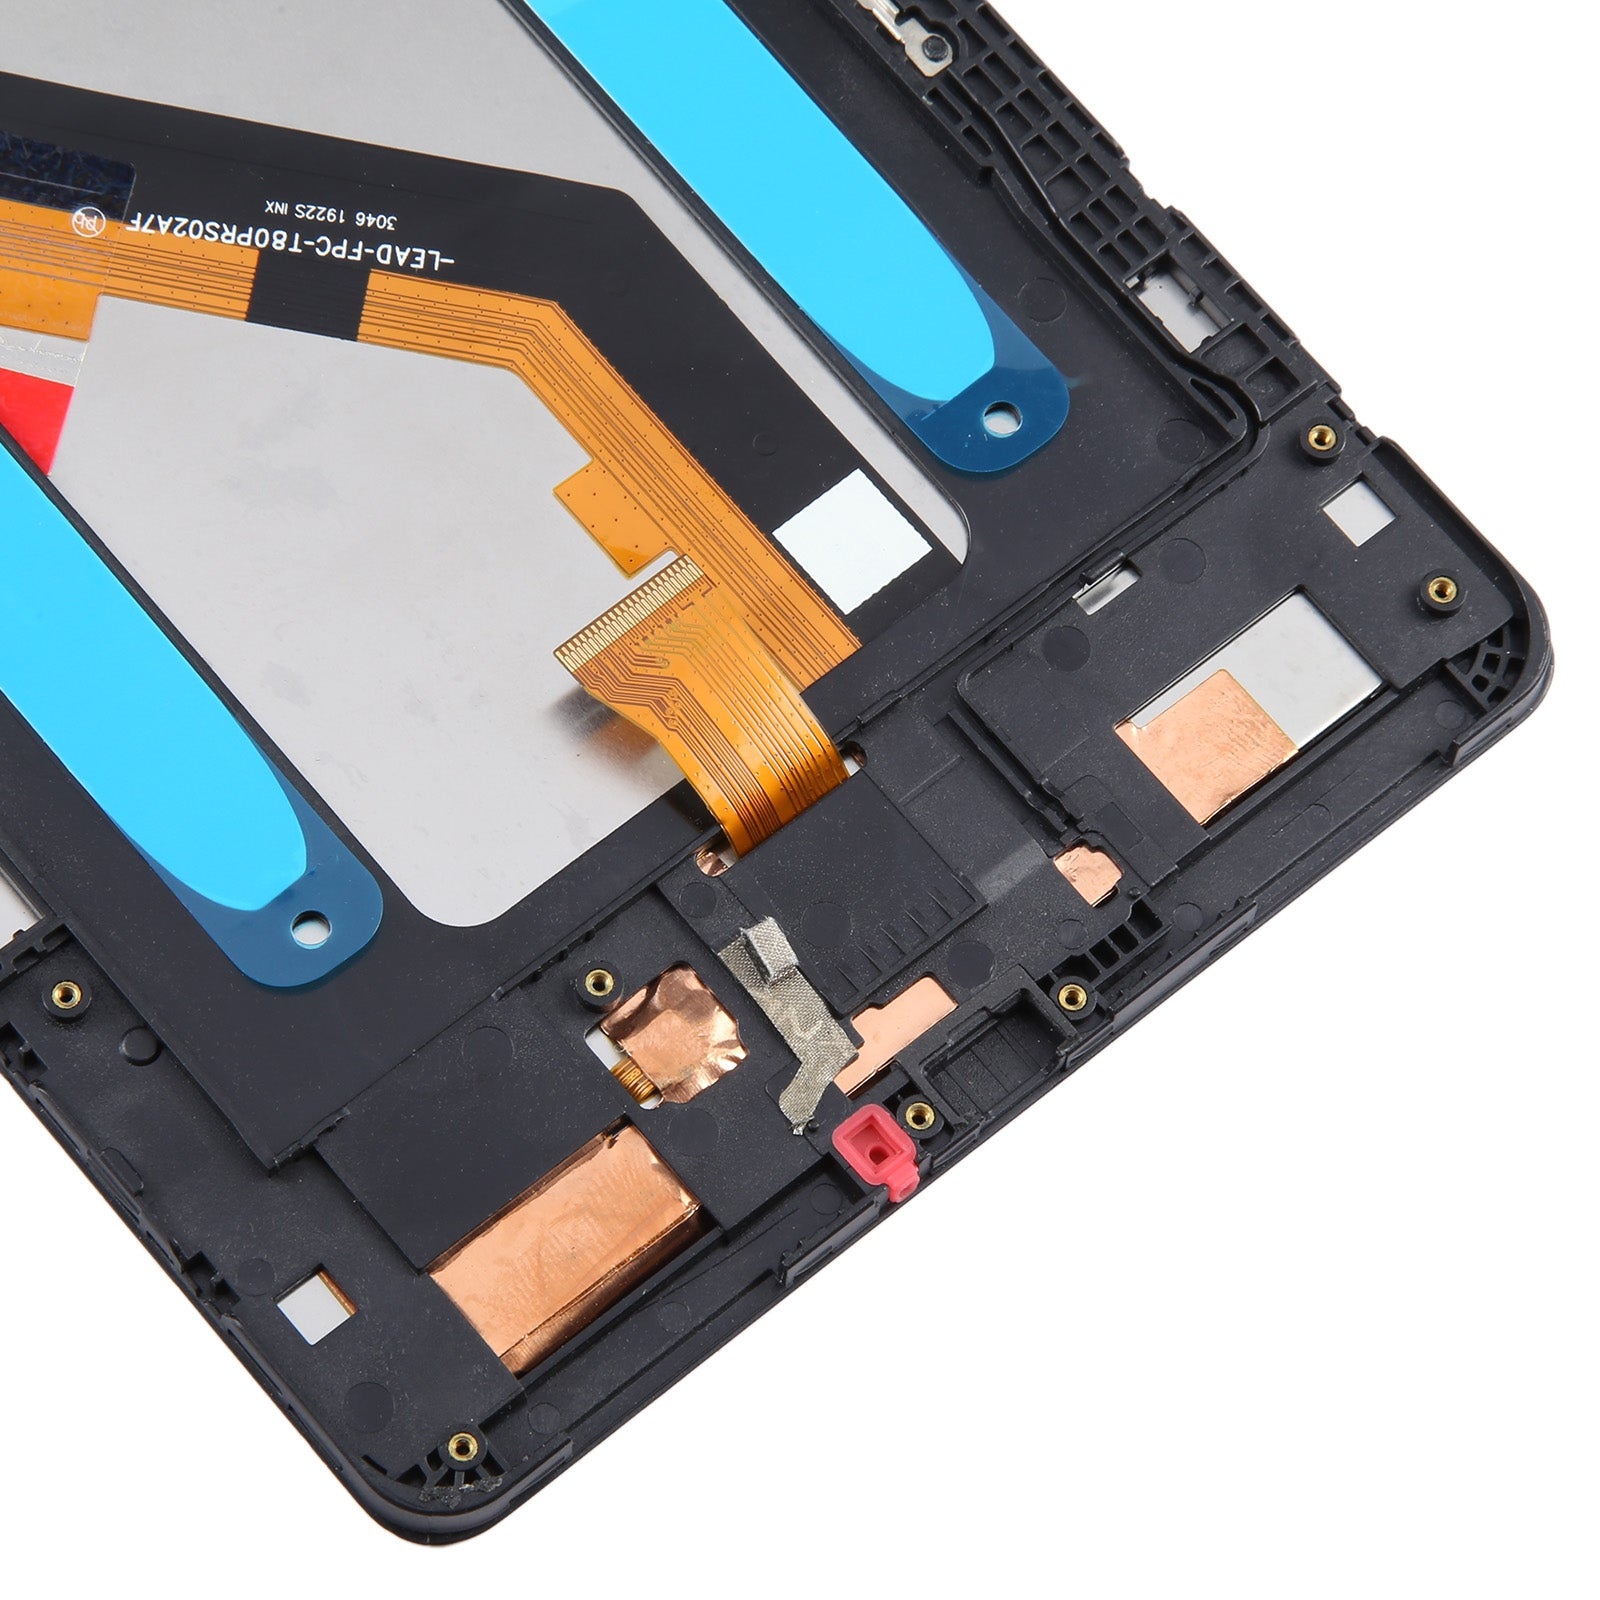 Ecran Plein + Tactile + Châssis Samsung Galaxy Tab A 8.0 2019 T290 WiFi Edition Noir